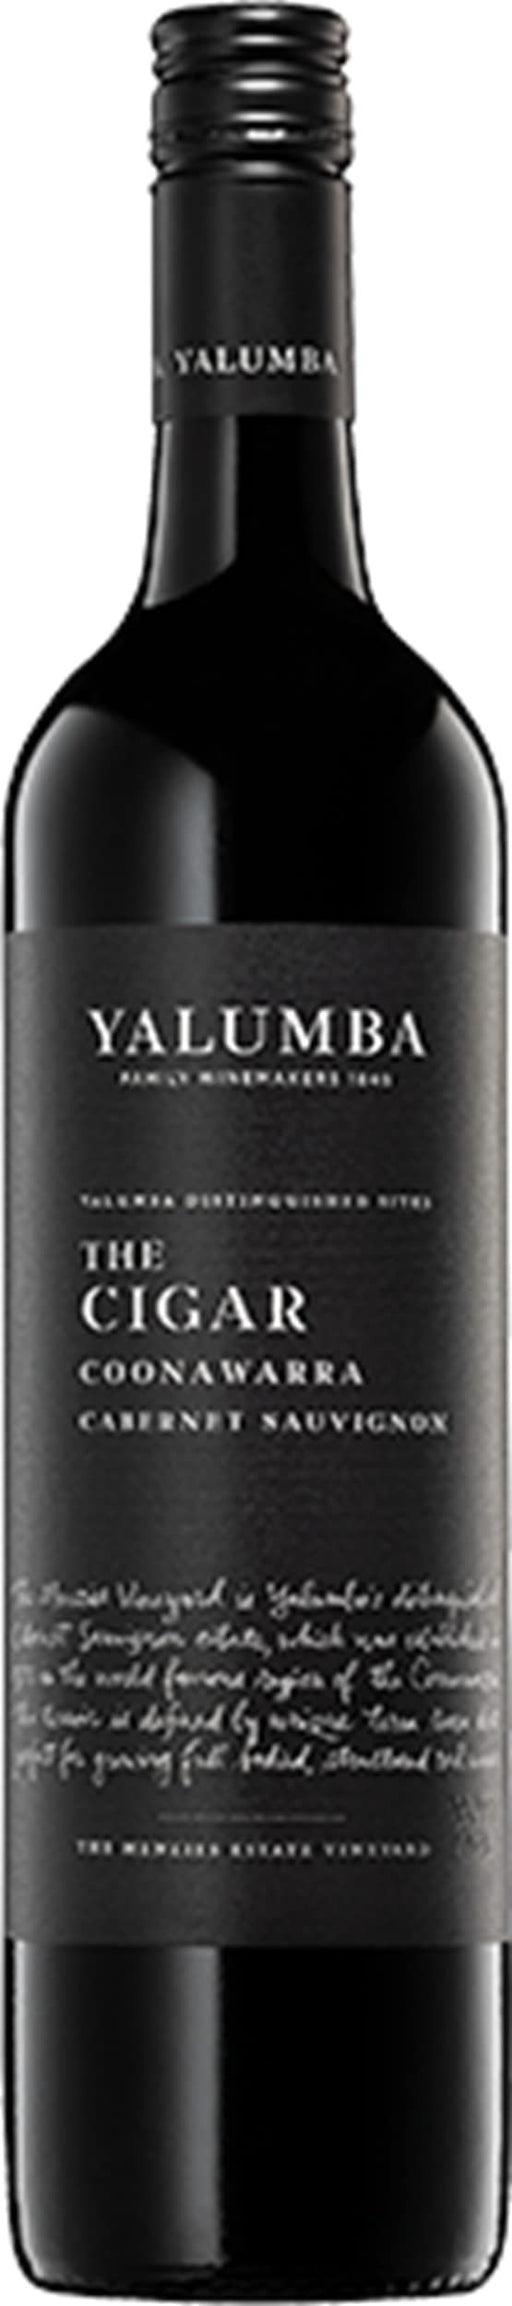 Yalumba The Cigar Cabernet Sauvignon 2019  Yalumba